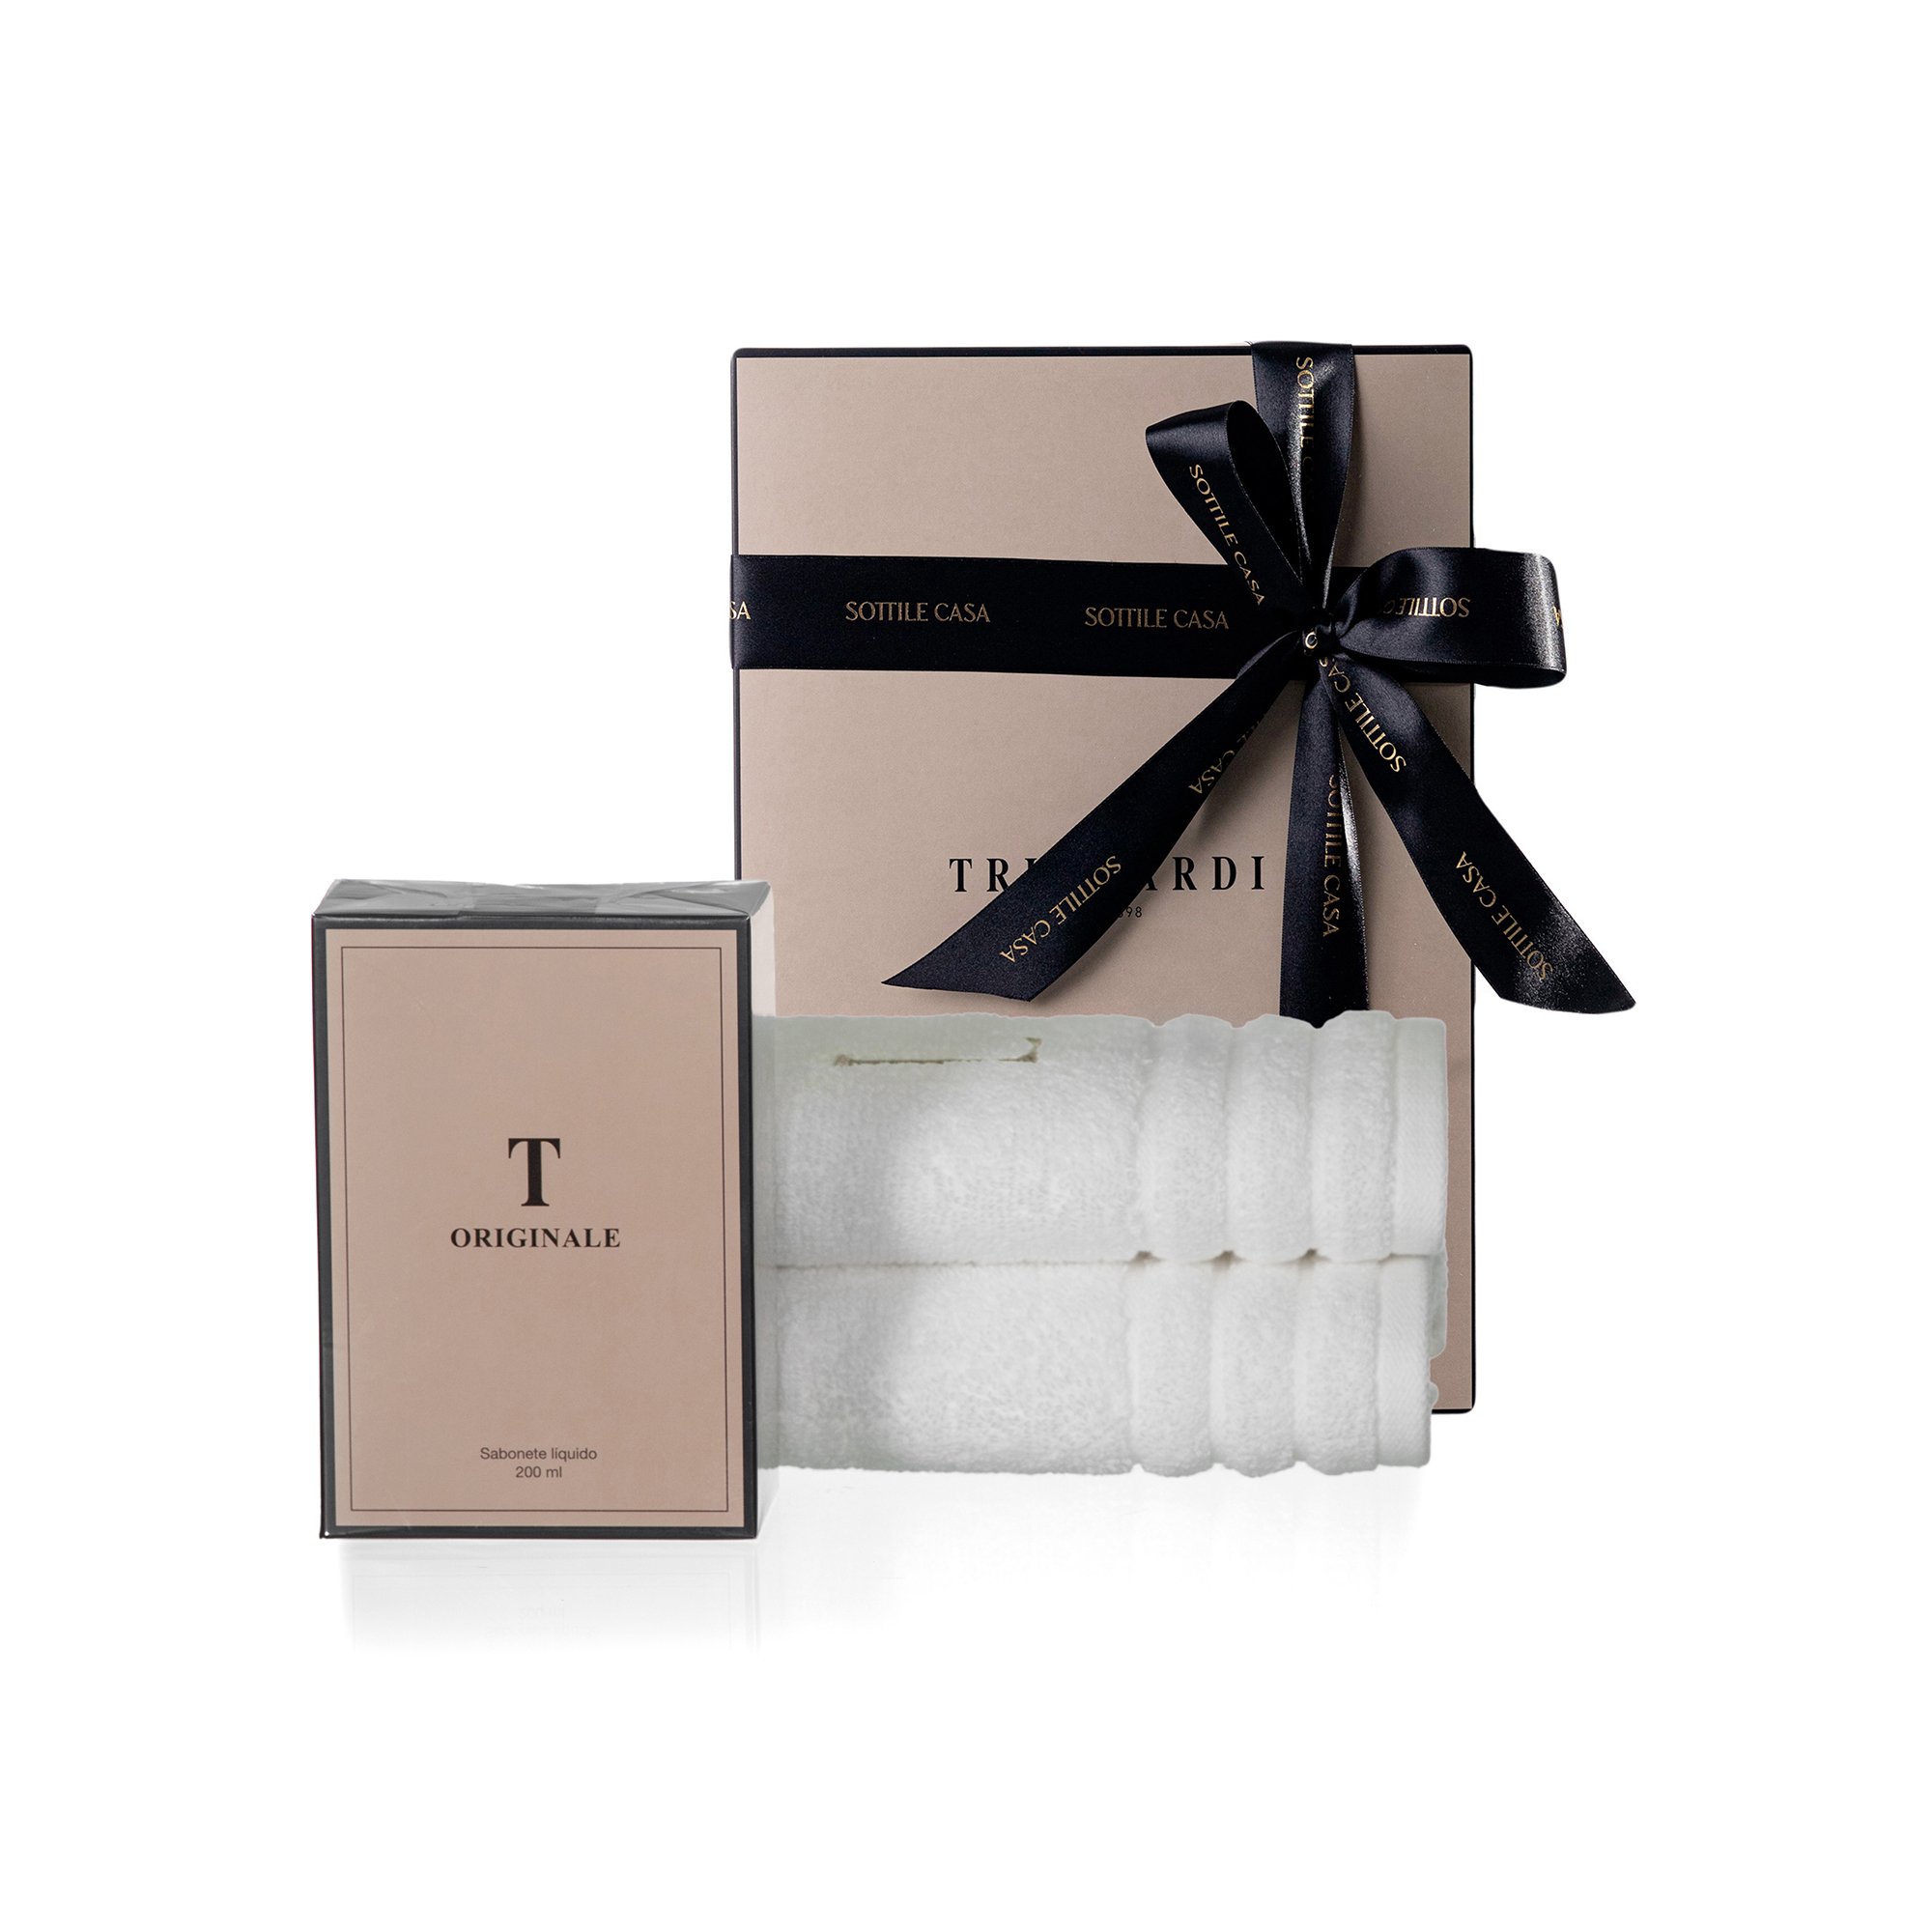 kit jogo 2 toalhas de lavabo 100 algodao trussardi imperiale branco com sabonete liquido trussardi 200ml originale com caixa de presente 2